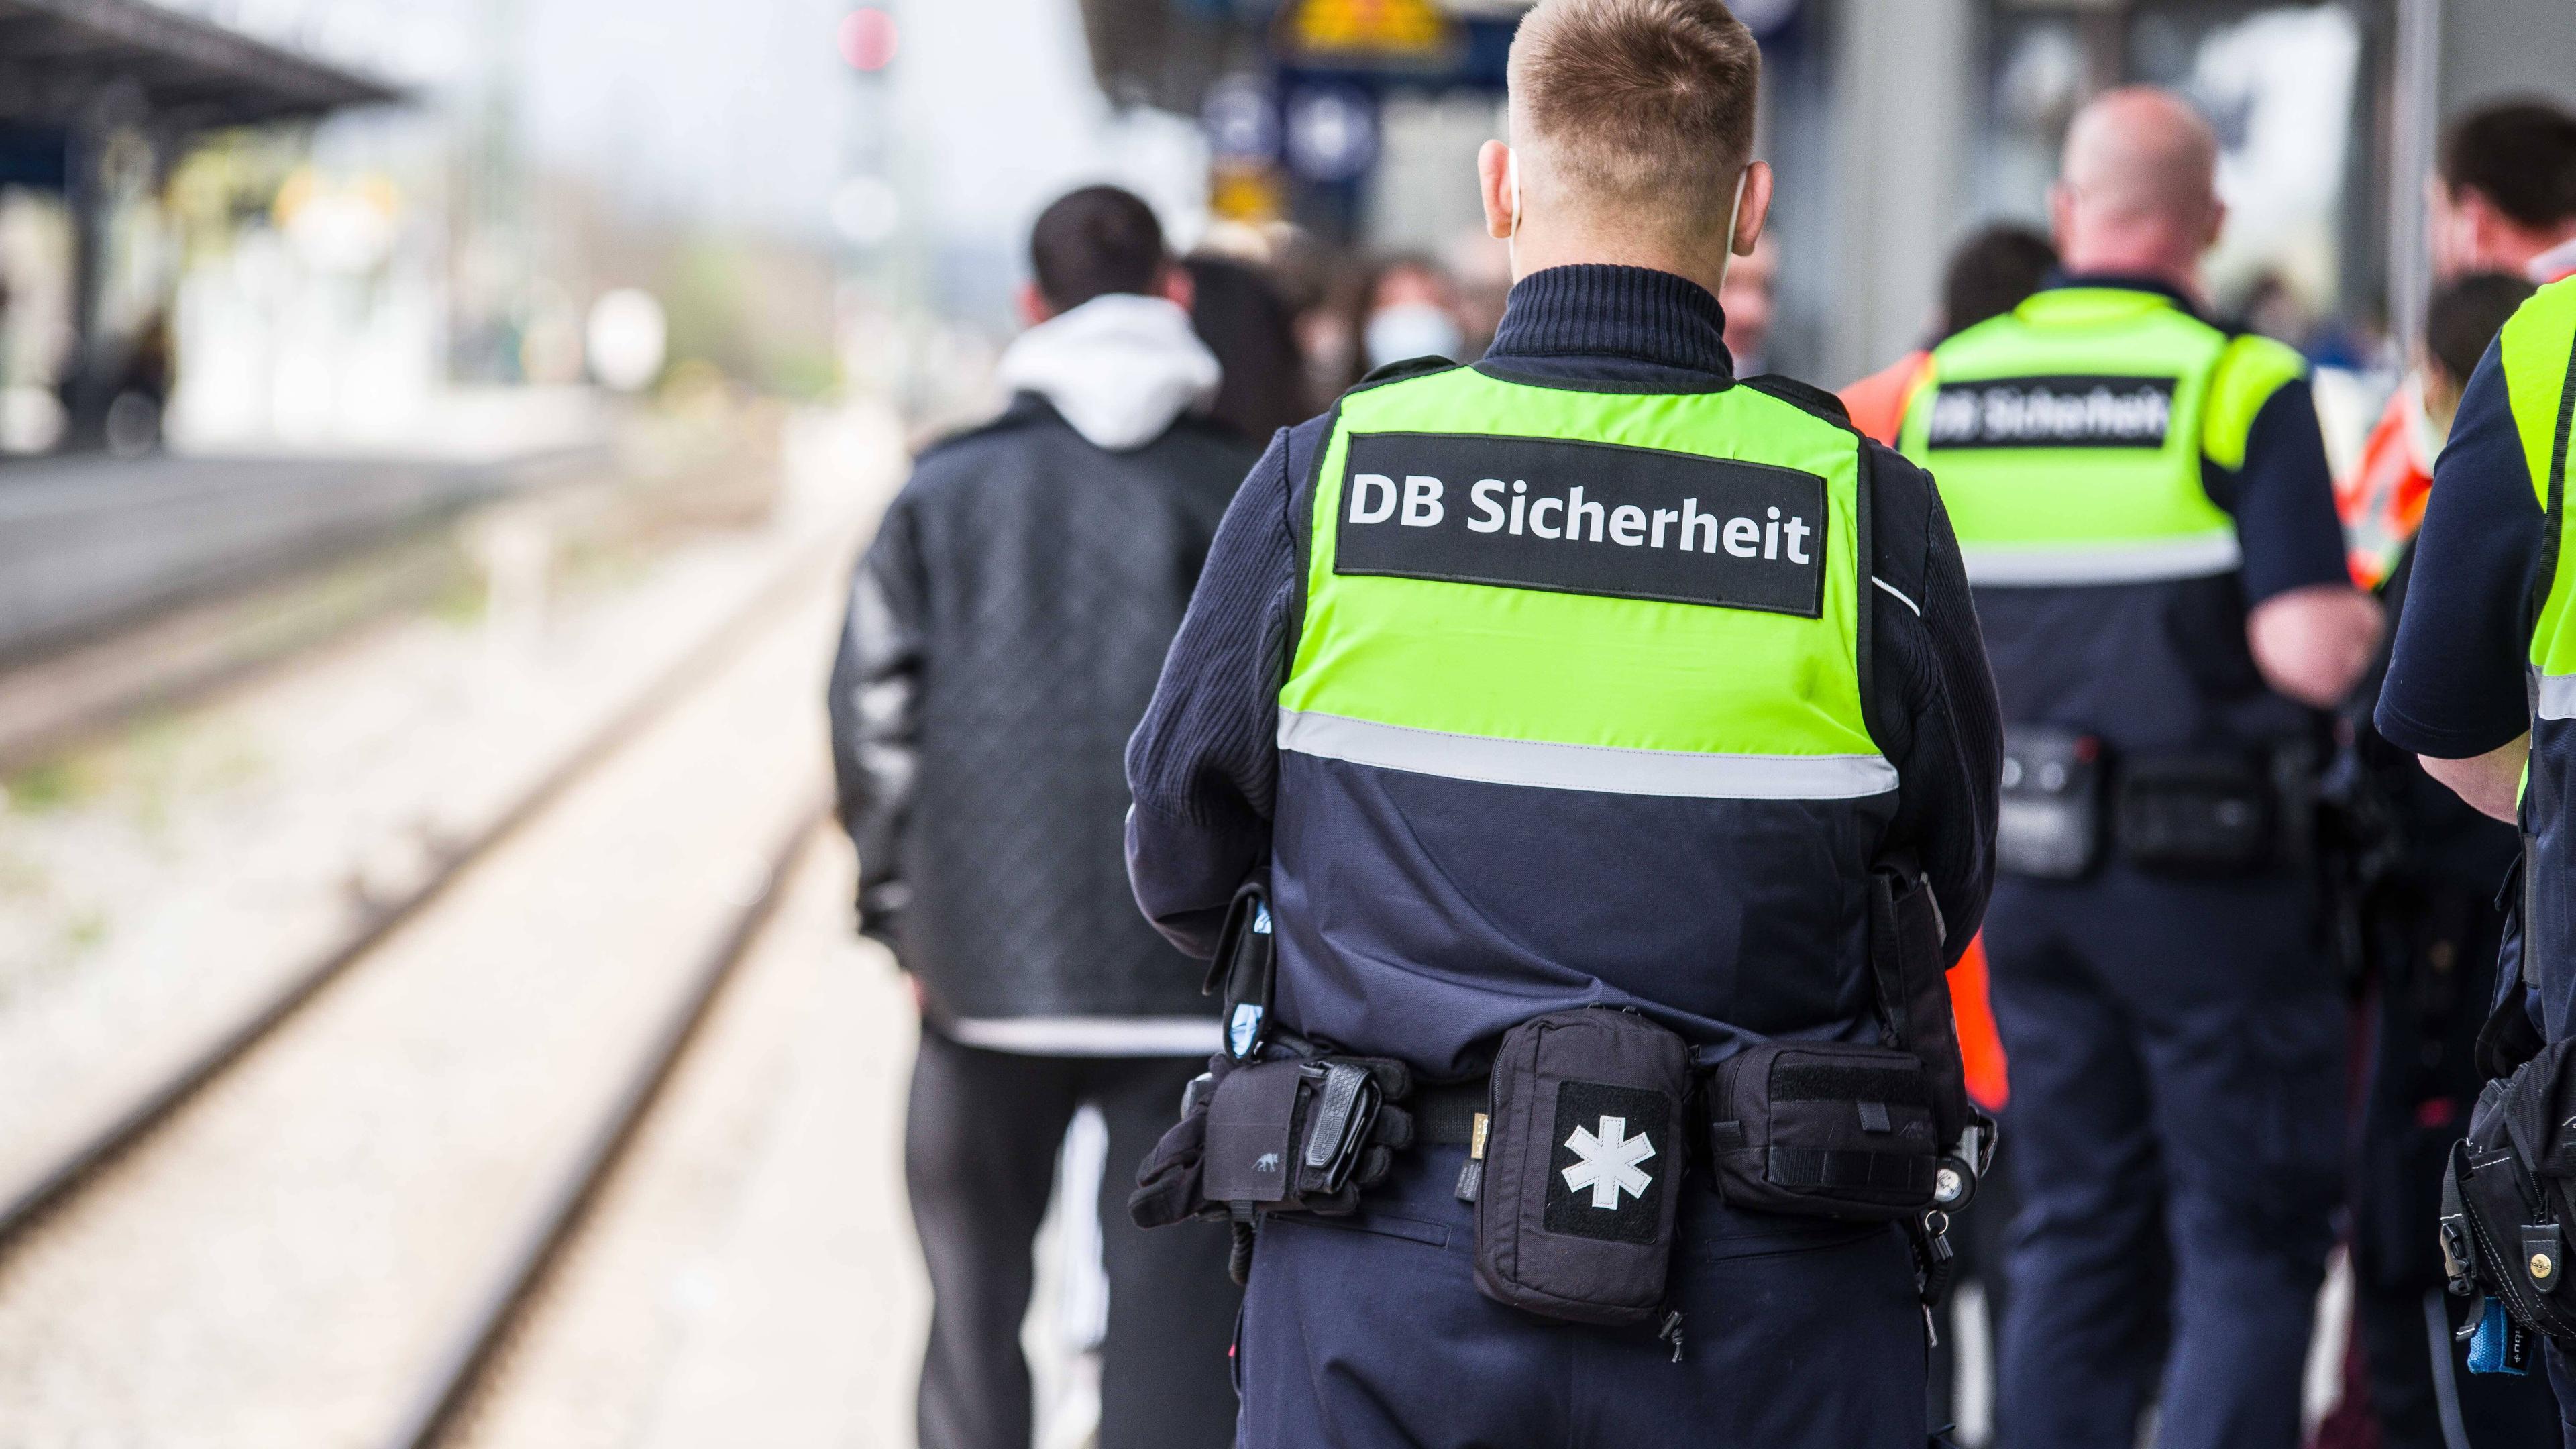 Mitarbeiter des DB-Sicherheitsdienstes am Bahnsteig